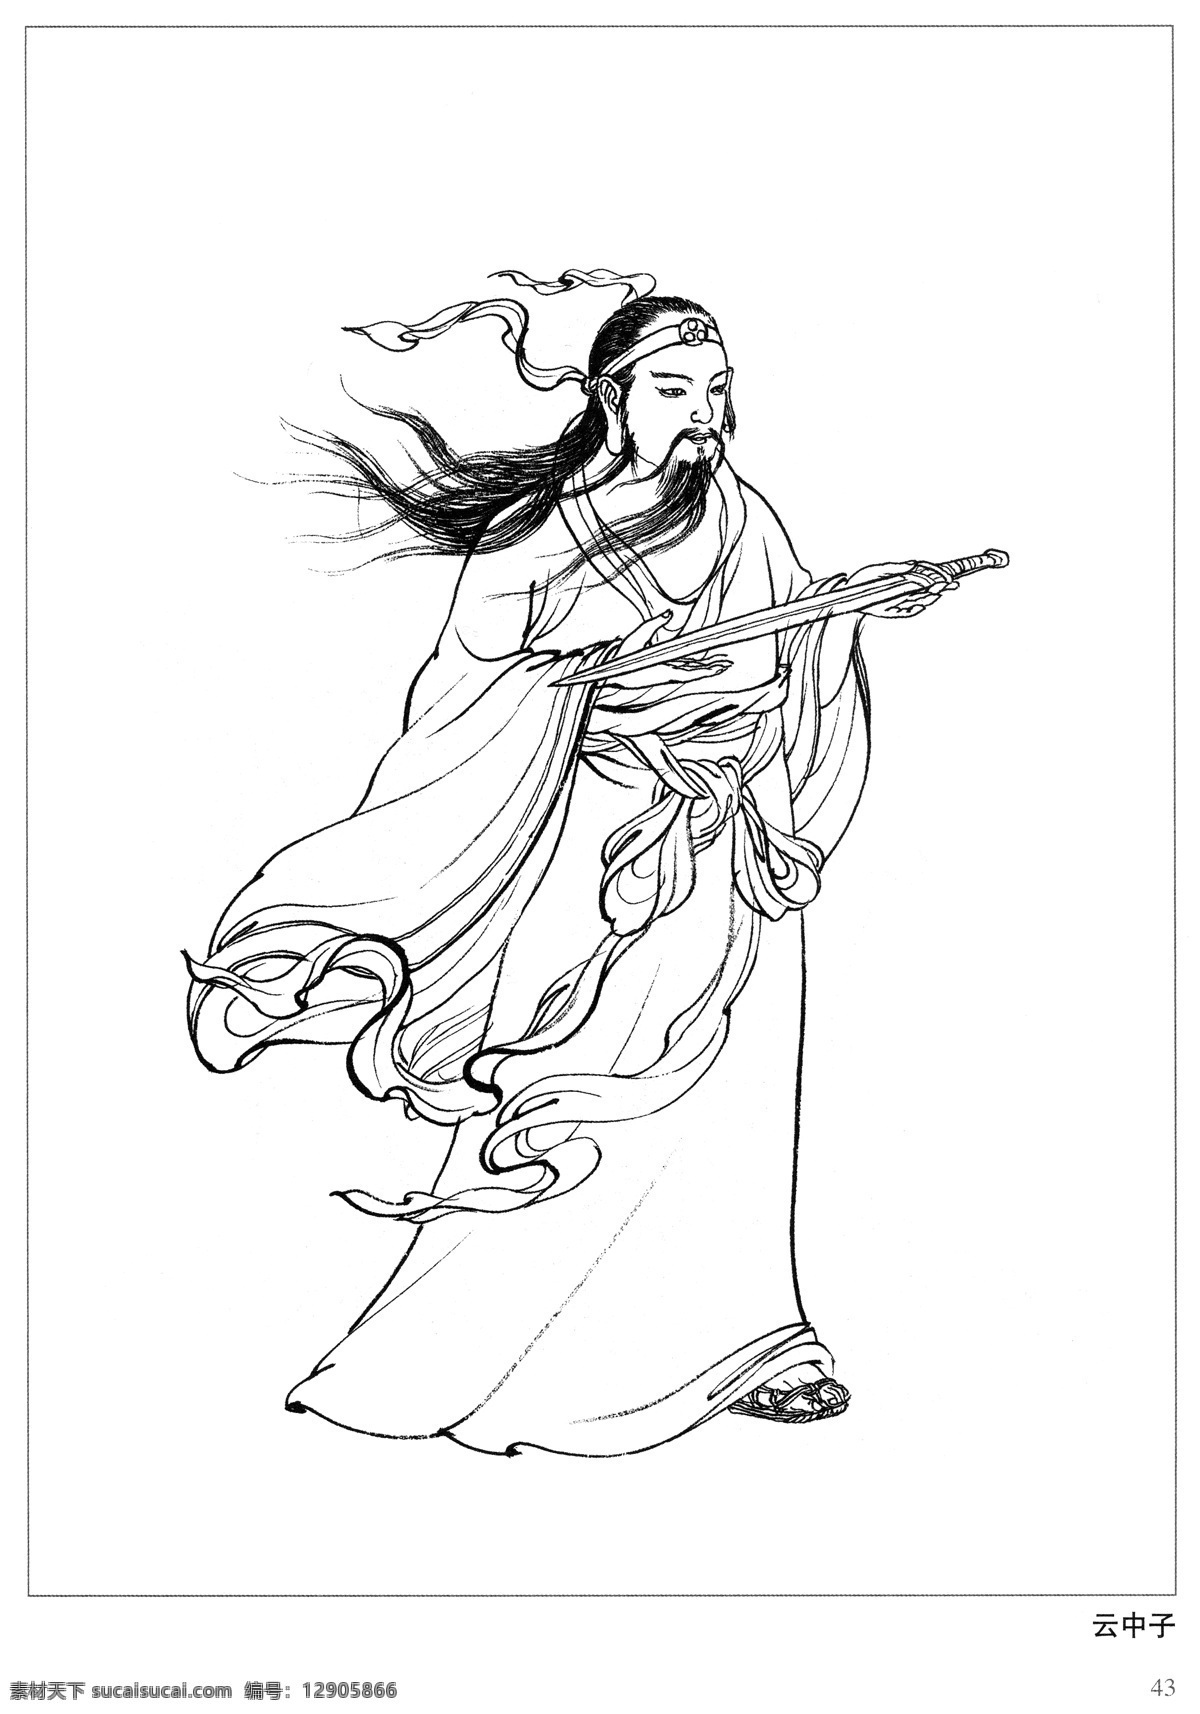 云中子 封神演义 古代 神仙 白描 人物 图 文化艺术 传统文化